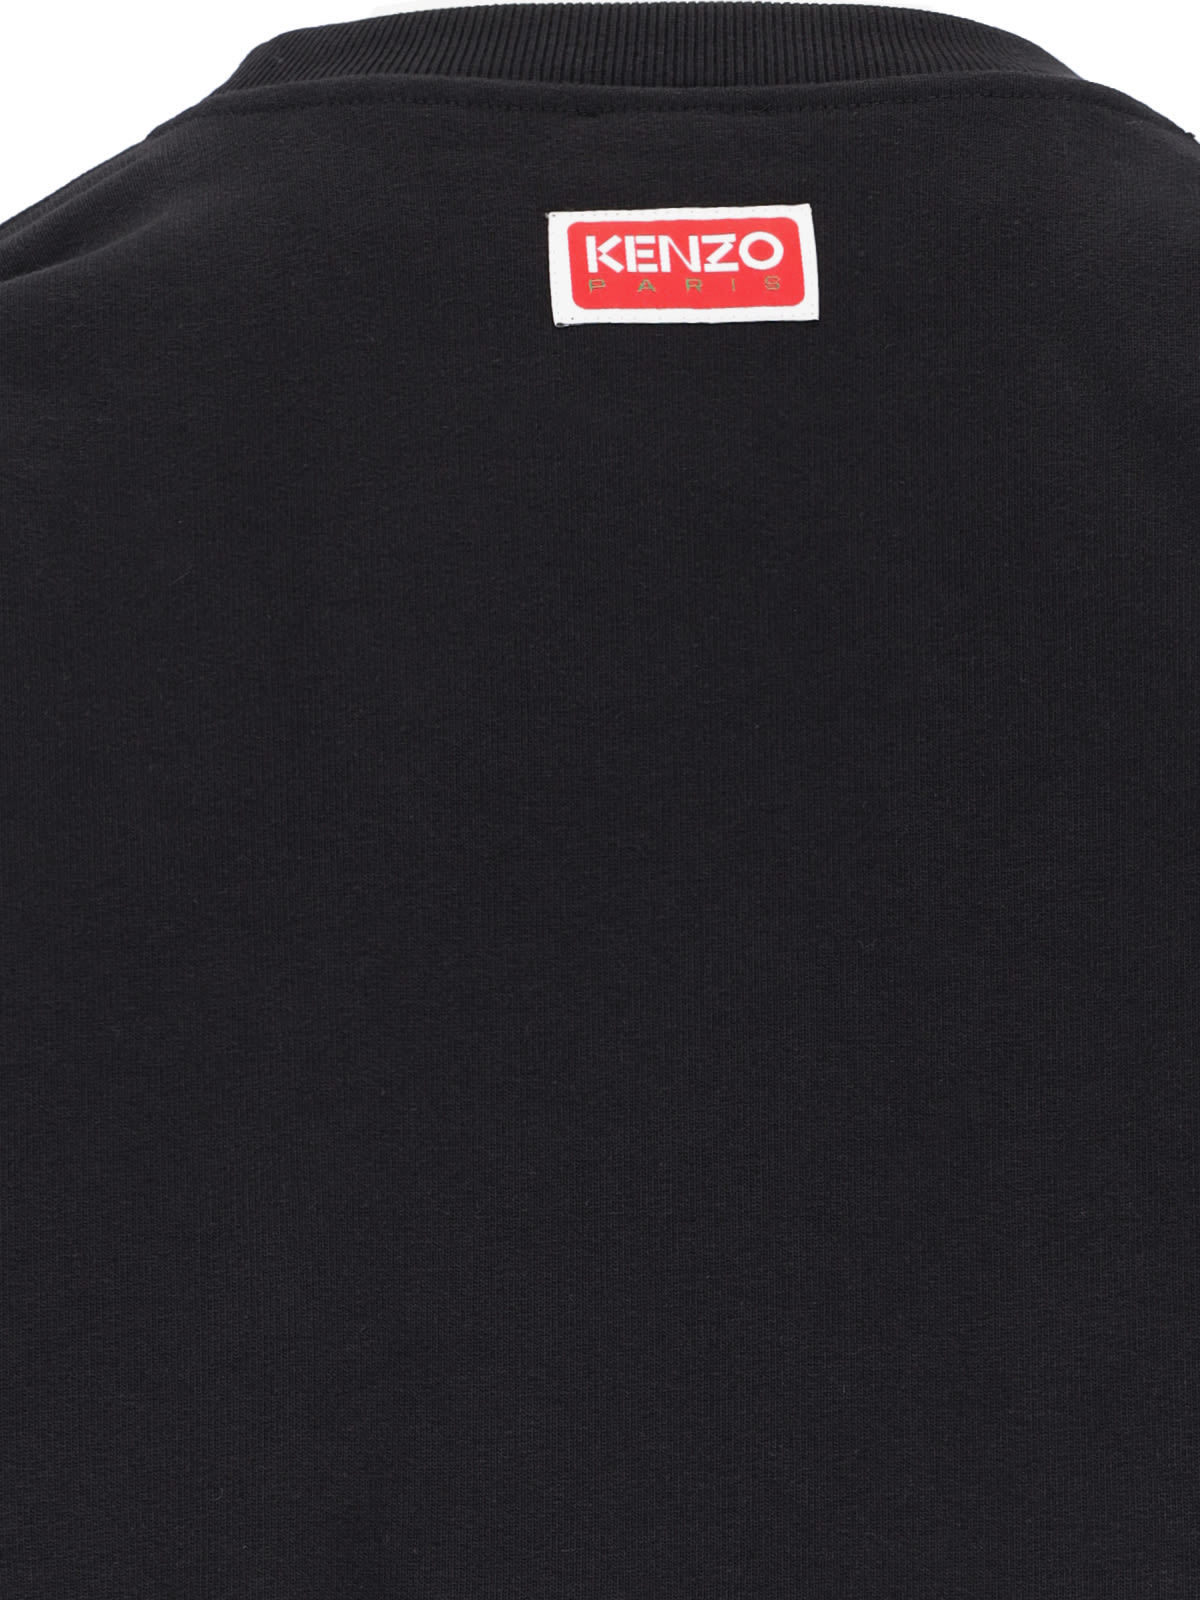 Shop Kenzo Boke Flower Crew Neck Sweatshirt In Black